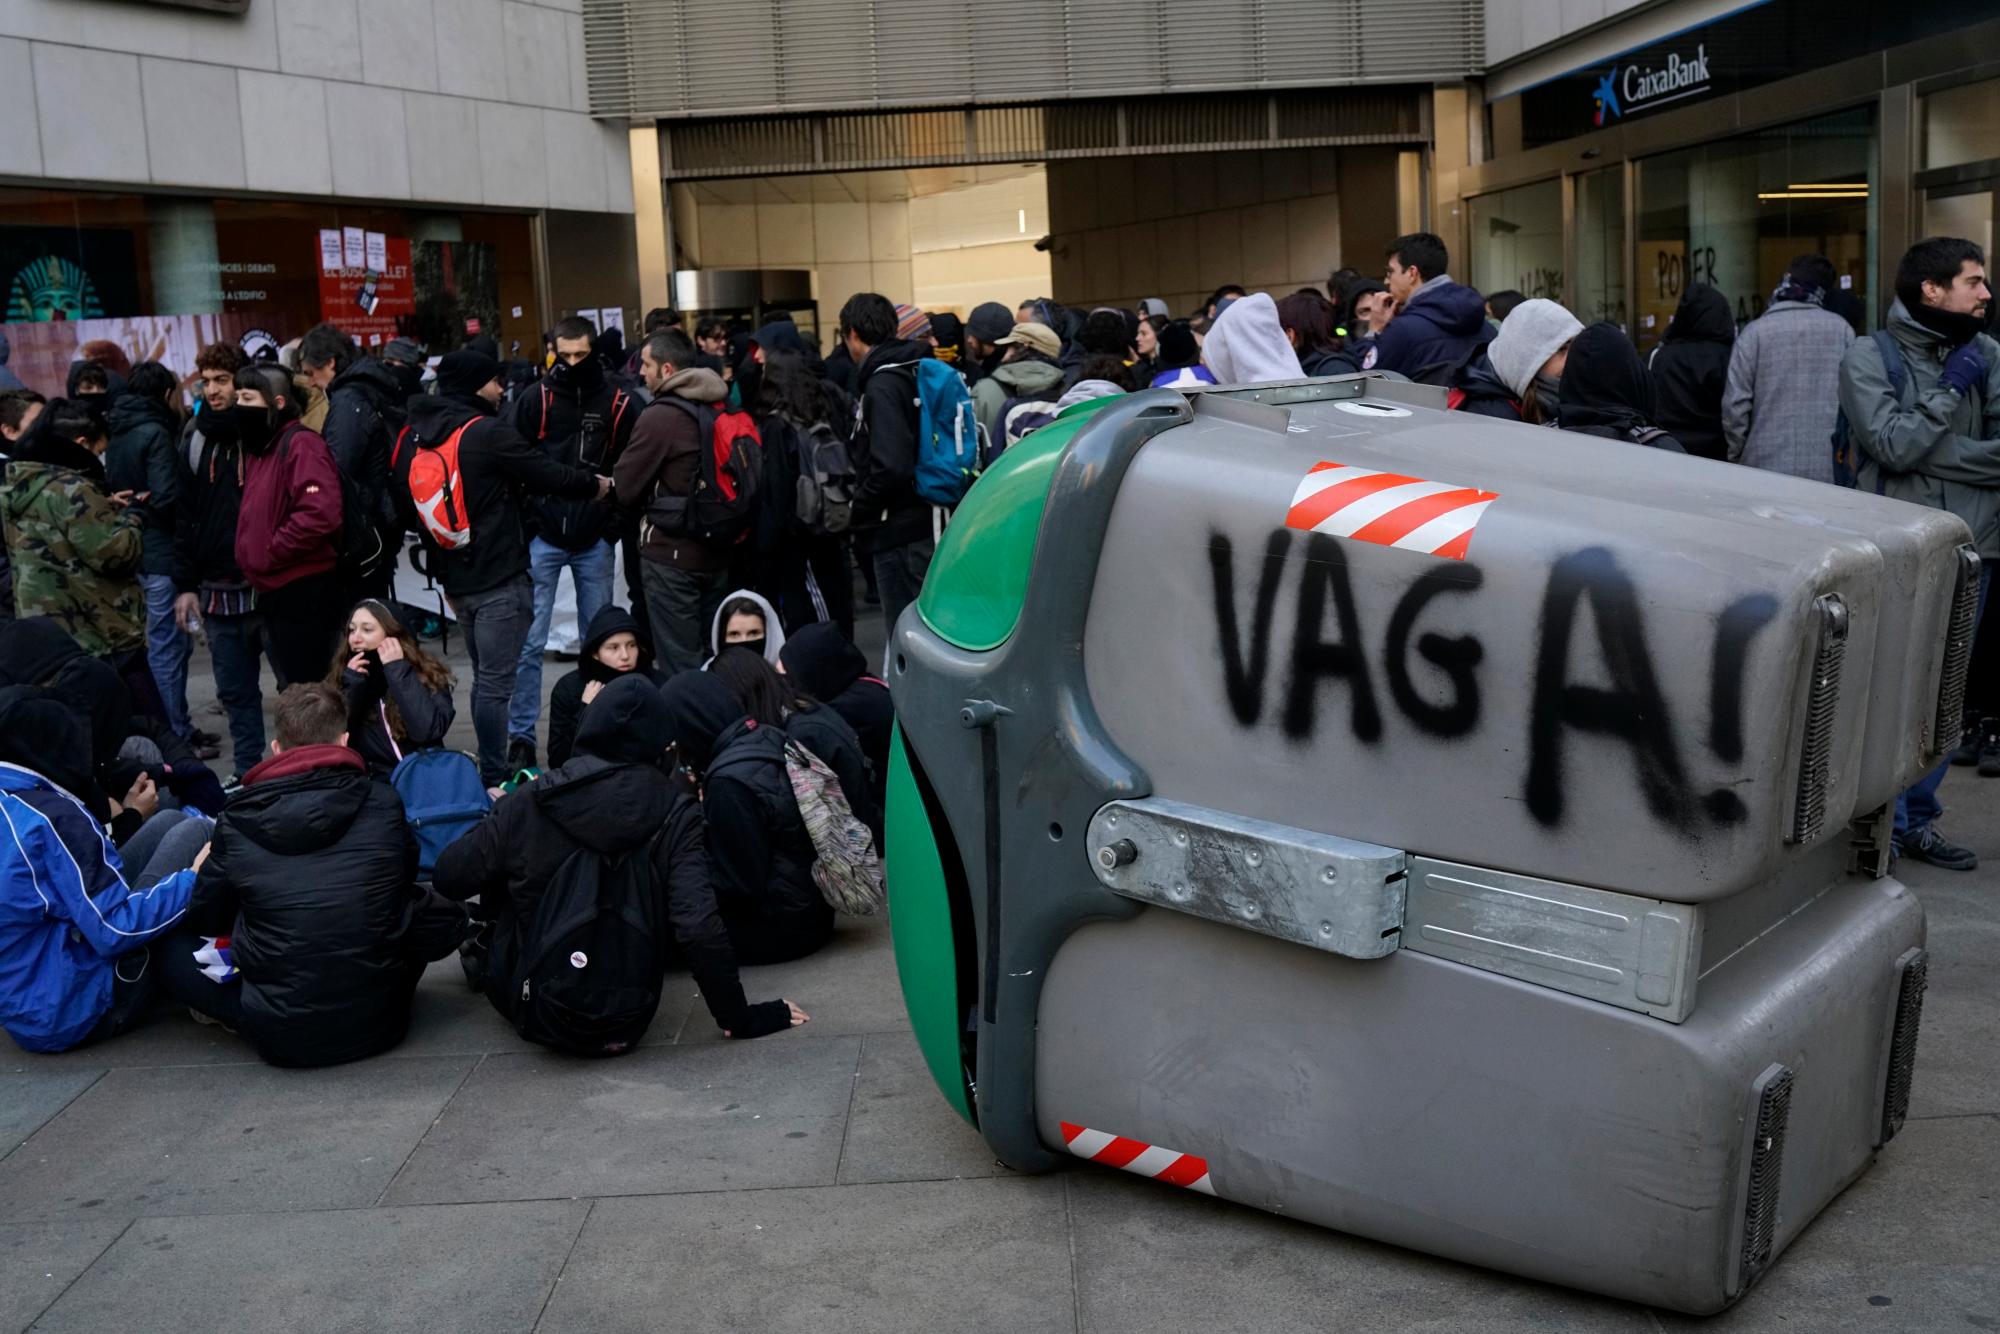 Los manifestantes se reúnen durante una huelga general en Cataluña, en Girona, España, el jueves 21 de febrero de 2019, con un graffiti en zafacón que dice “huelga”. Los huelguistas que abogan por la secesión de Cataluña de España están bloqueando las principales autopistas, líneas de tren y carreteras en toda la región noreste.